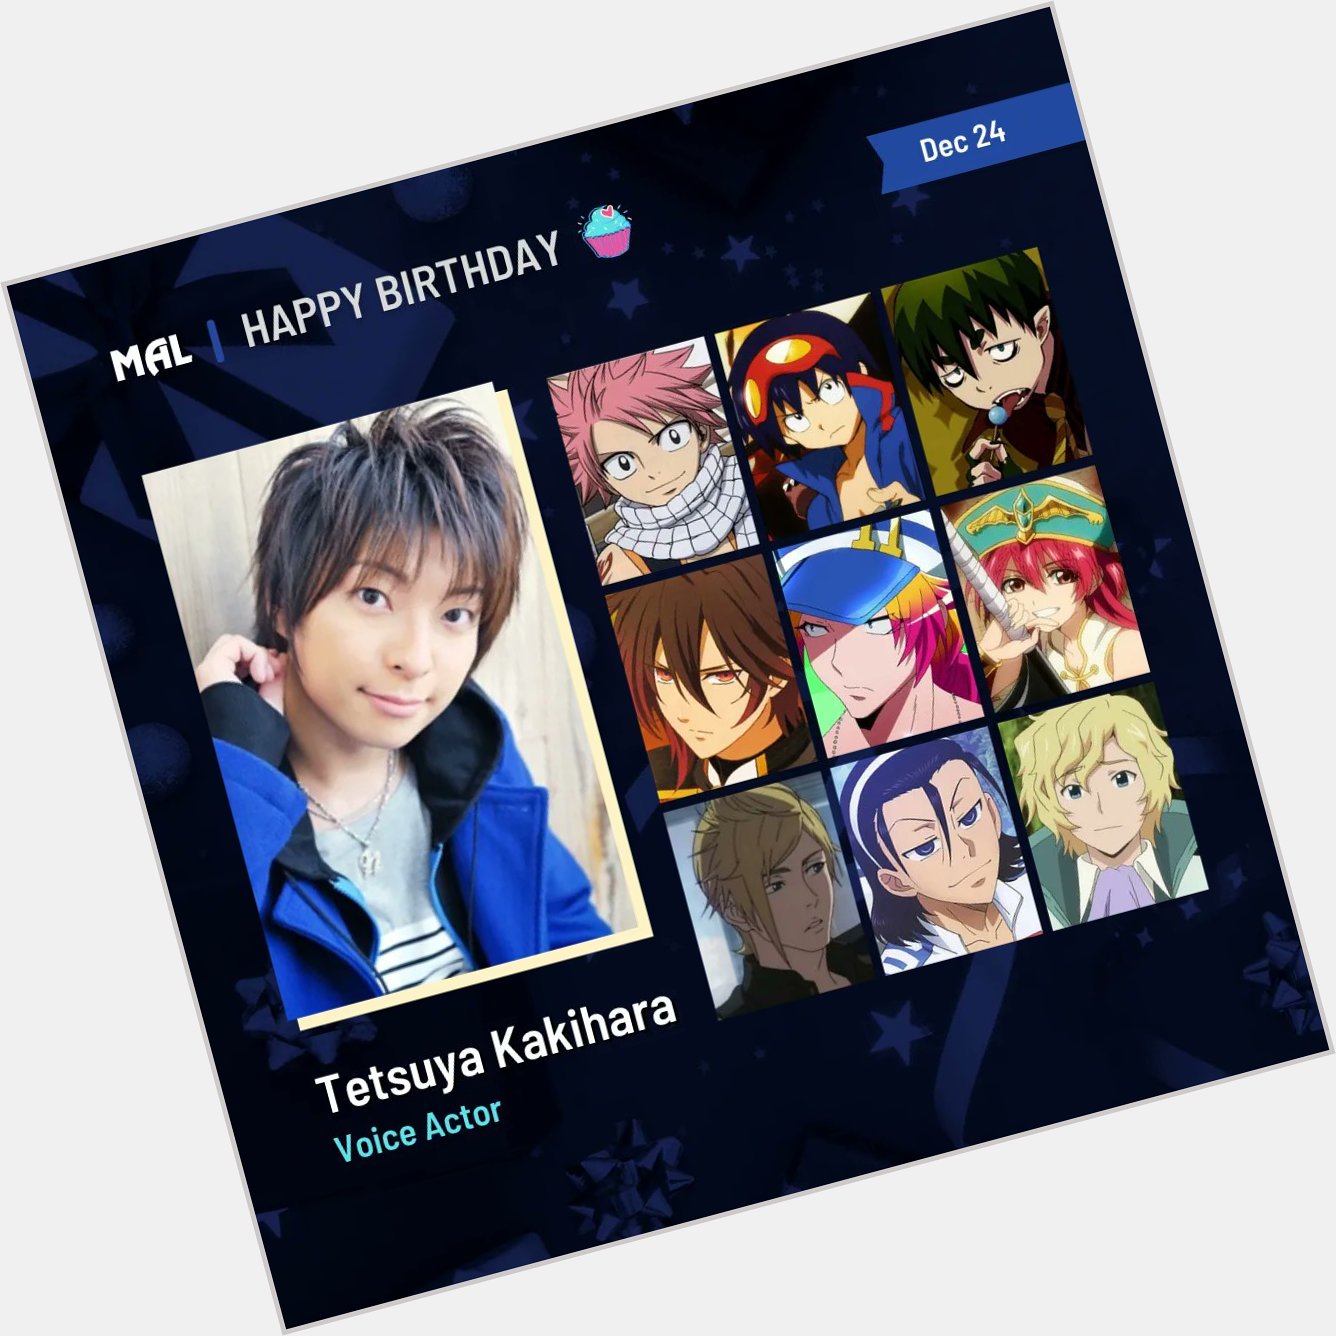 Happy birthday to Tetsuya Kakihara! Full profile:  